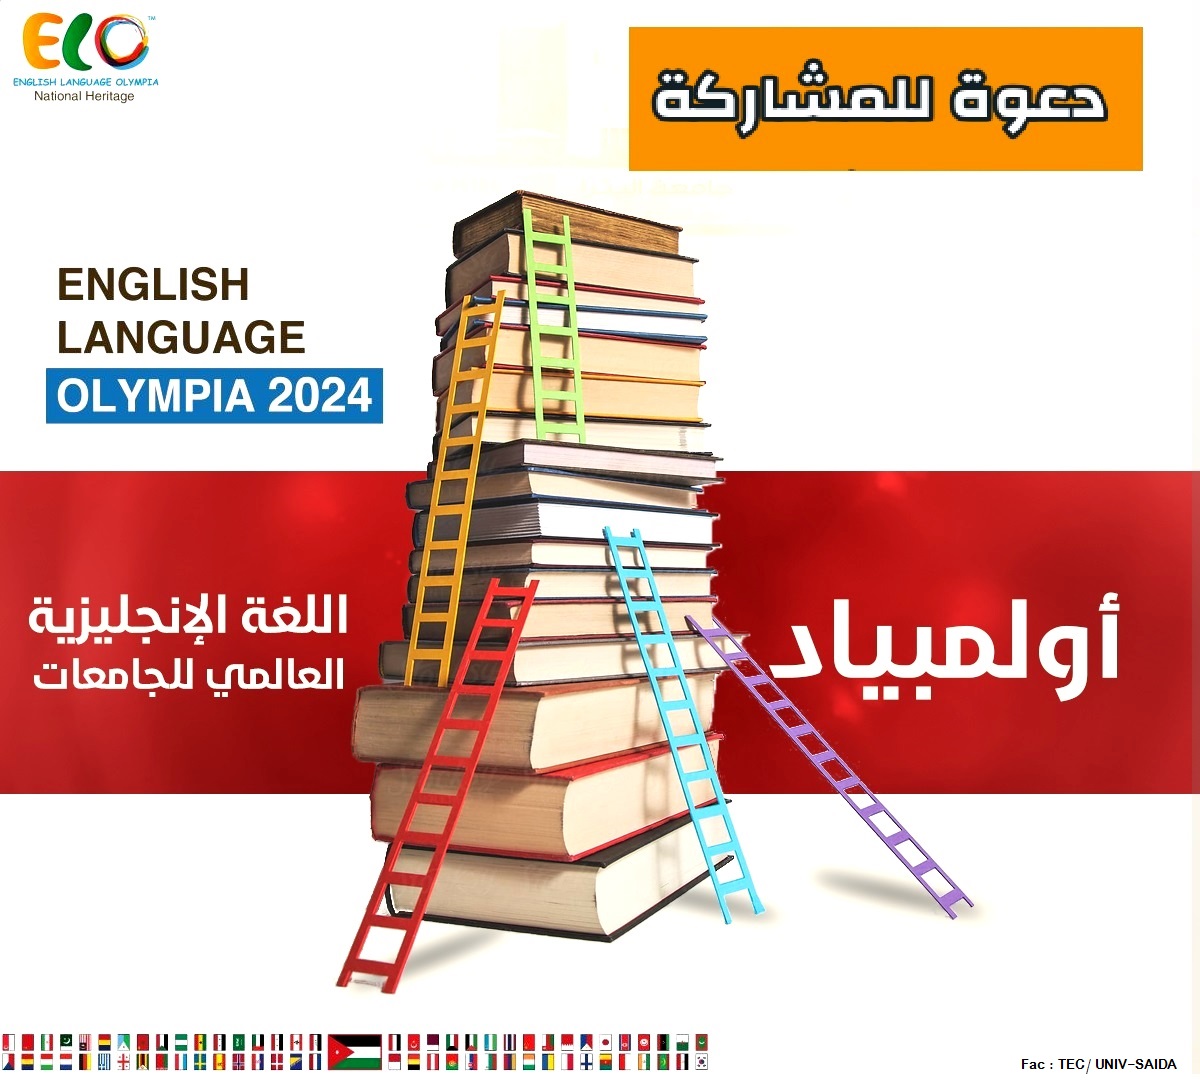 دعوة للمشاركة في أولمبياد اللغة الإنجليزية العالمي للجامعات 2024 (الأردن)